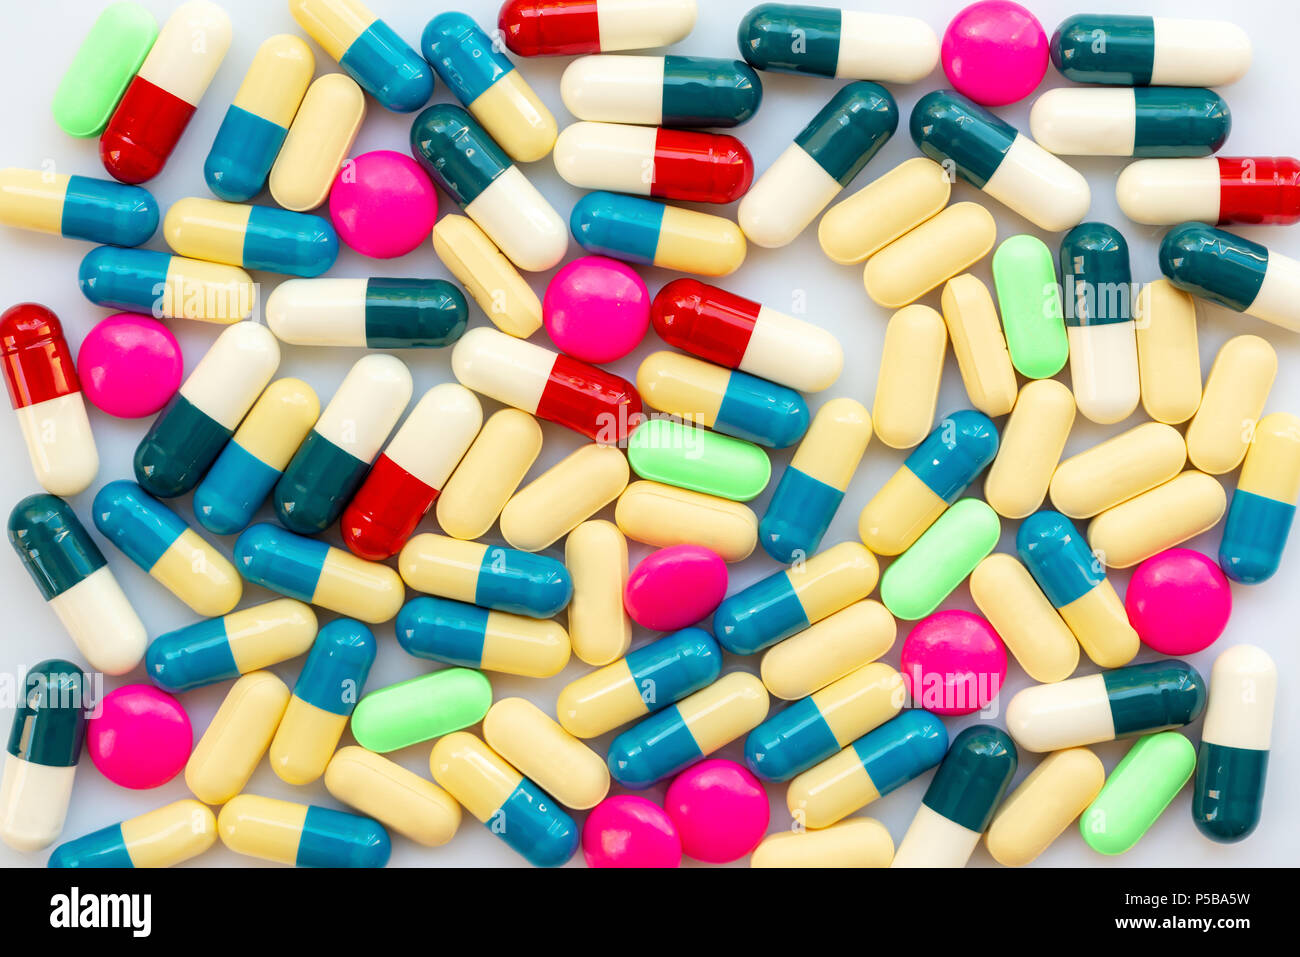 Antecedentes de coloridas pastillas y medicamentos, la salud y la medicación concepto Foto de stock